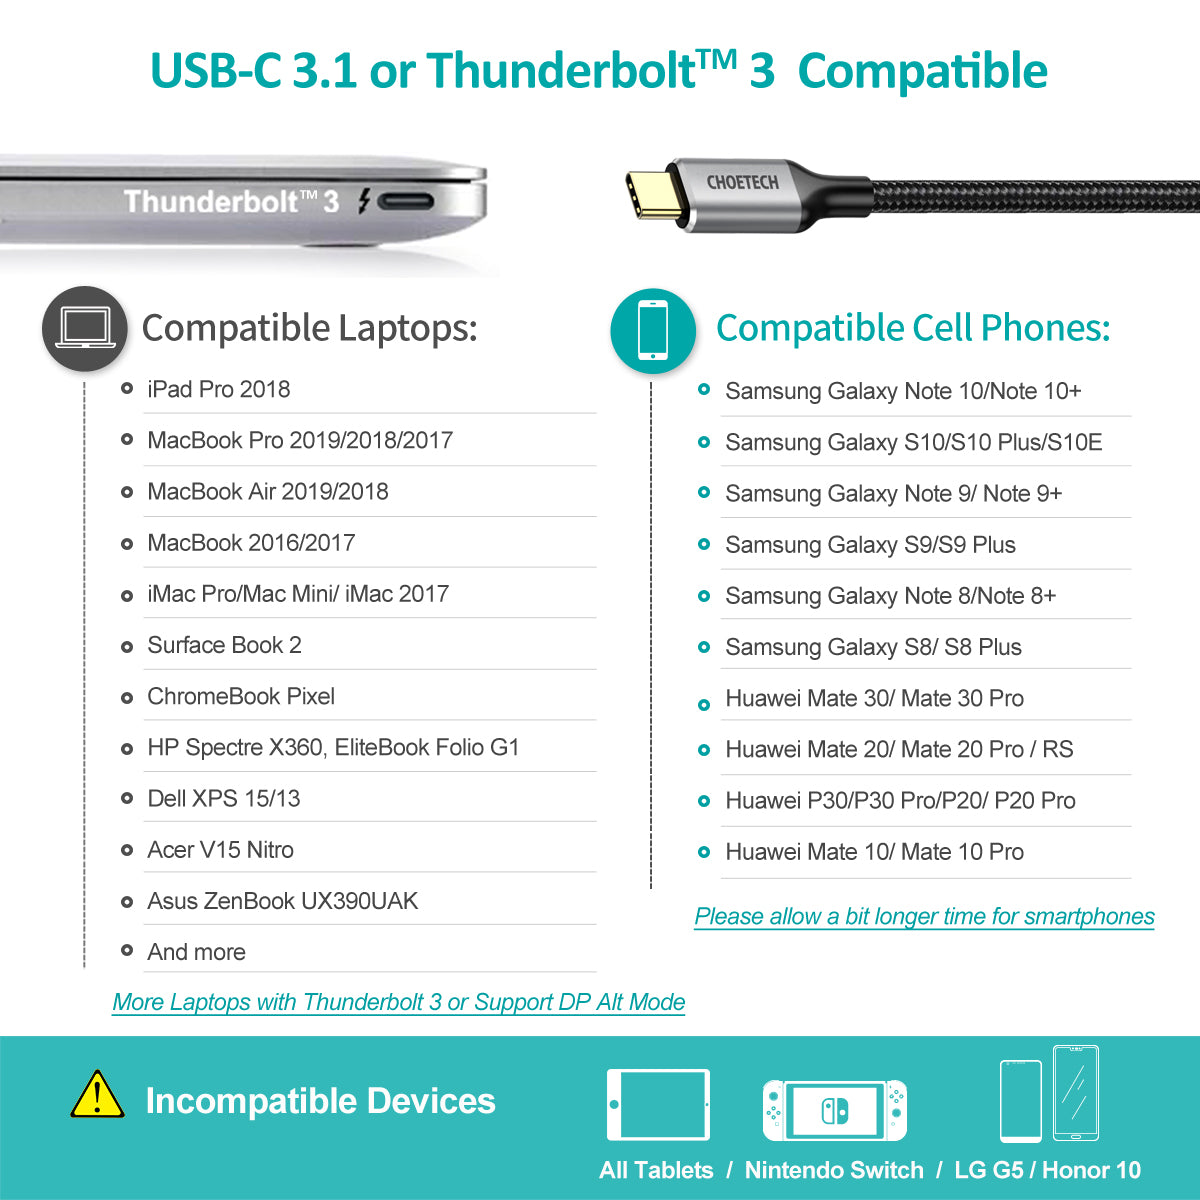 CH0033 Choetech Câble USB C vers HDMI (4K à 60 Hz), 6,5 pieds/2 m, adaptateur tressé USB Type C vers HDMI Câble Thunderbolt 3